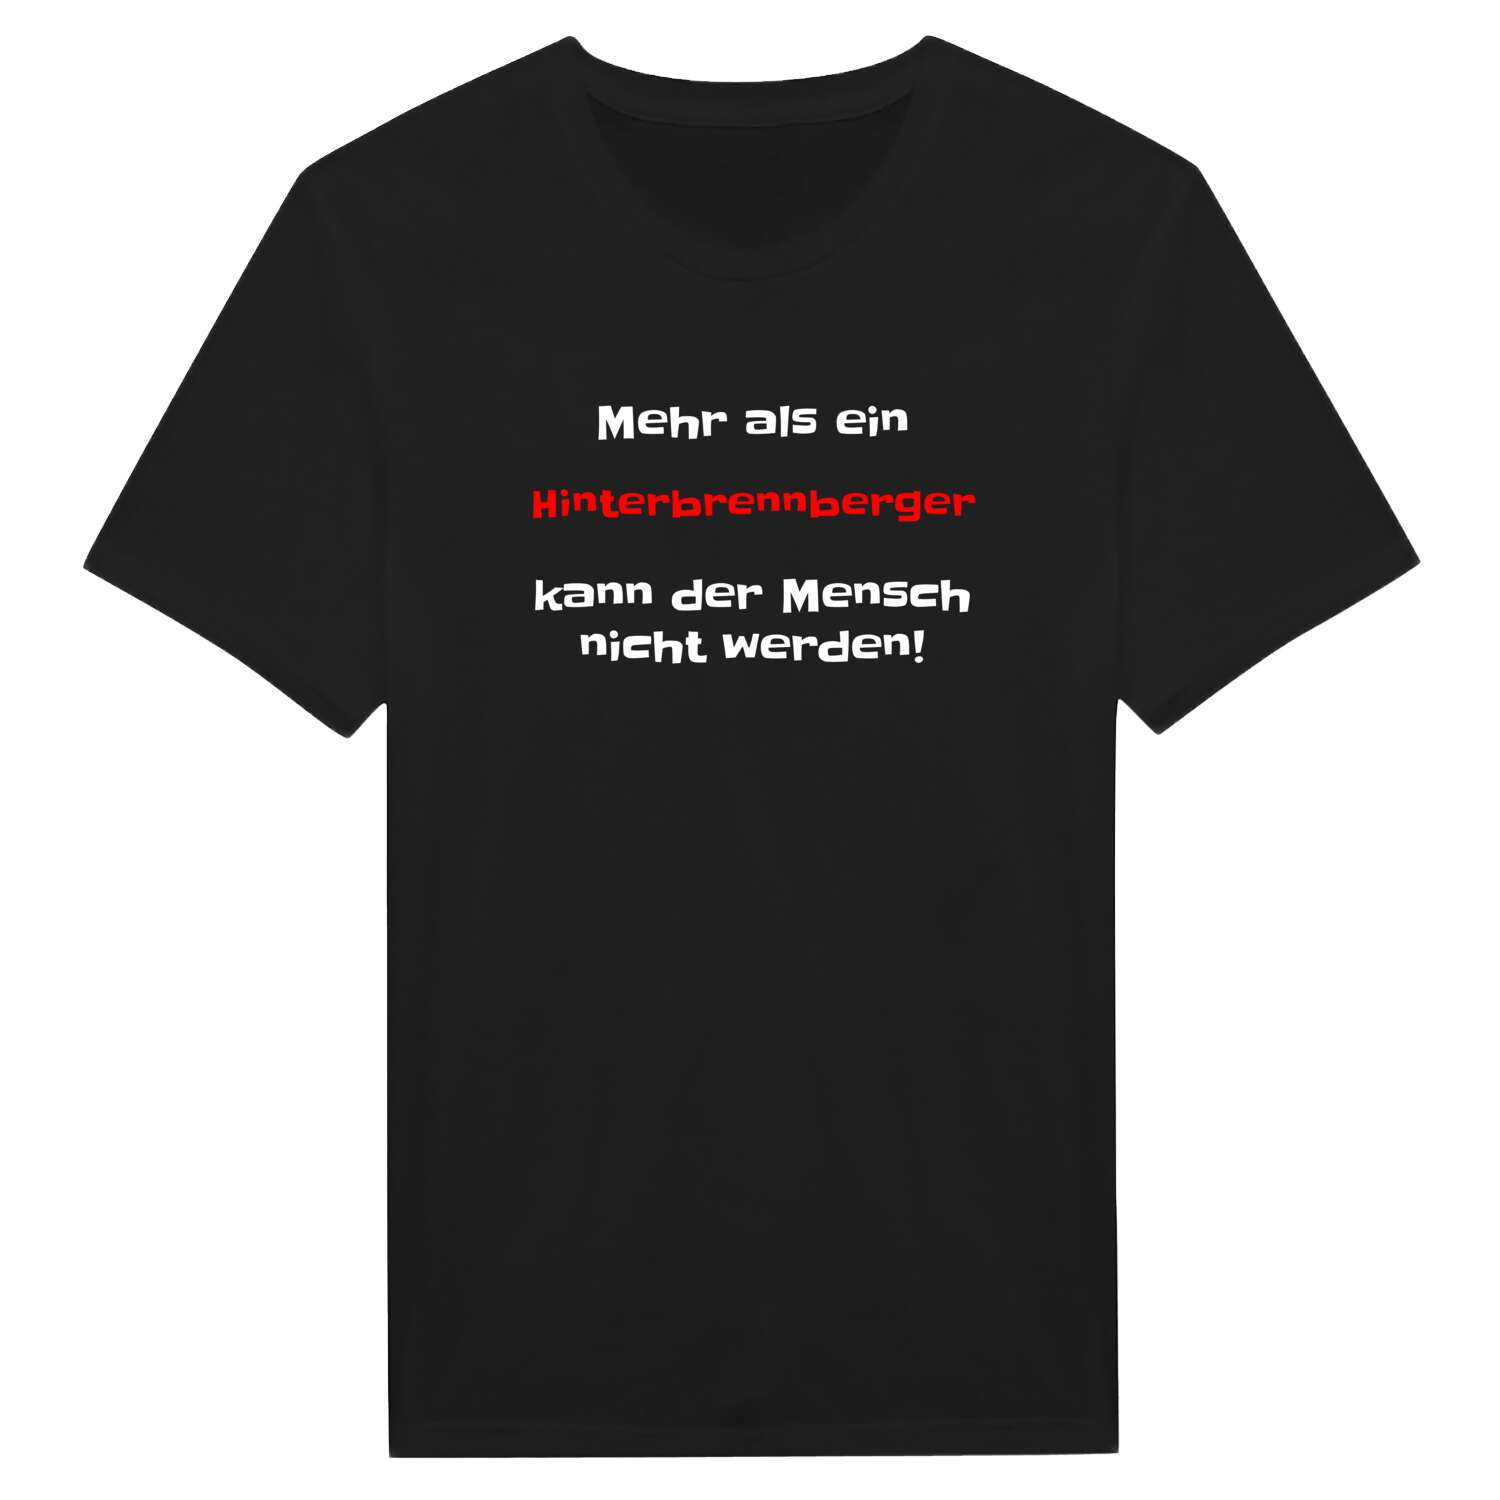 Hinterbrennberg T-Shirt »Mehr als ein«